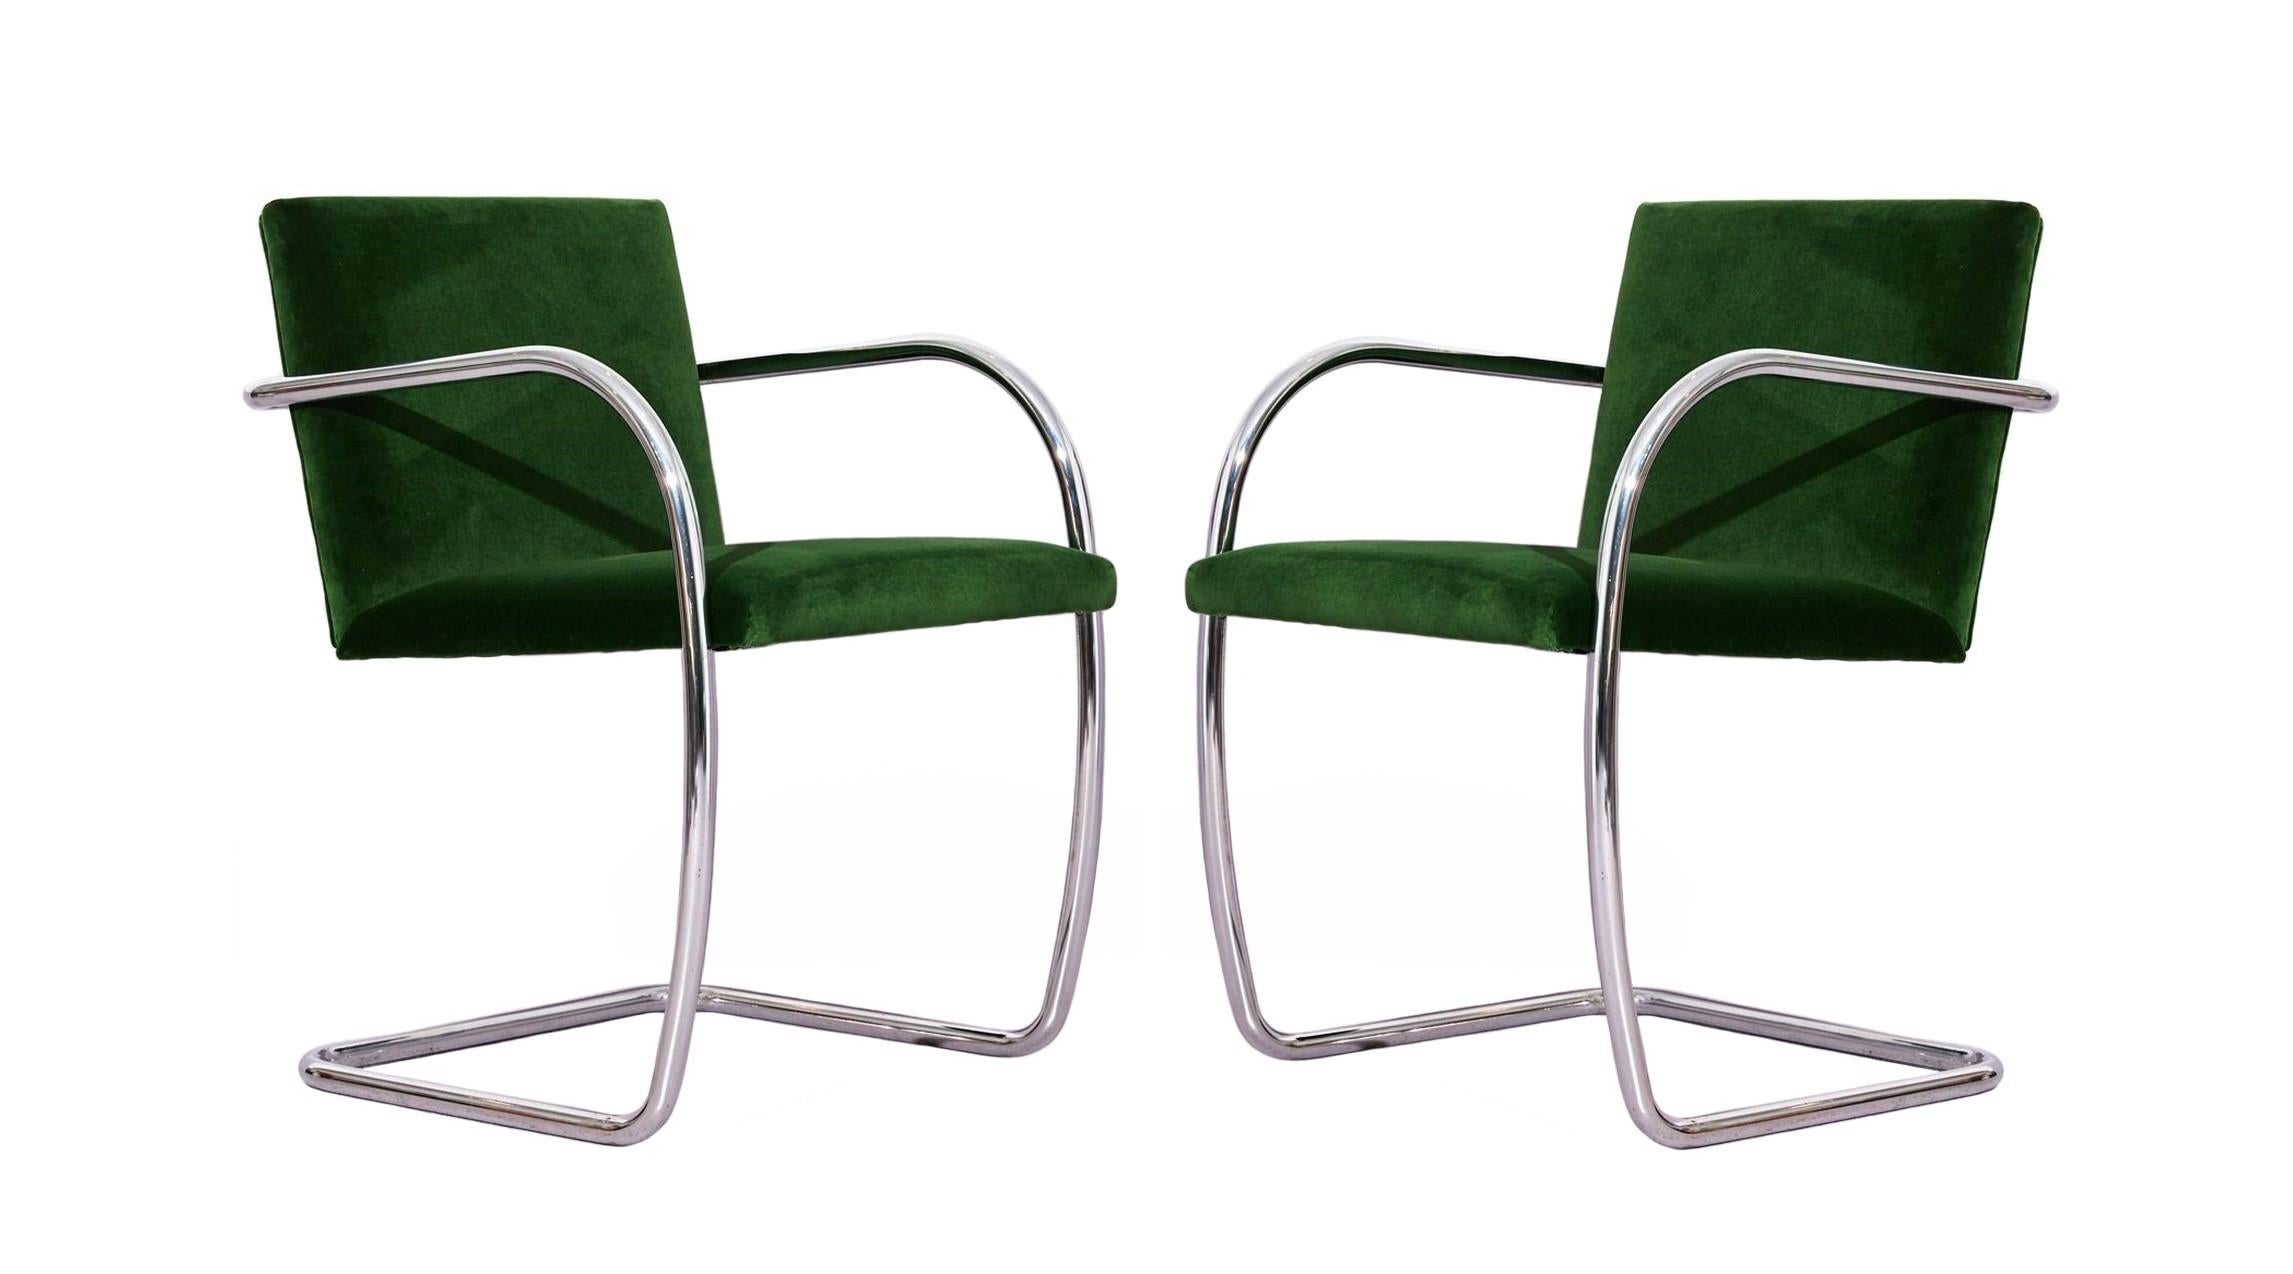 Ensemble entièrement restauré de huit chaises tubulaires Brno par Mies van der Rohe pour Knoll. Le rembourrage a été refait par un professionnel dans un velours vert et les chromes sont en très bon état. Étiquette 